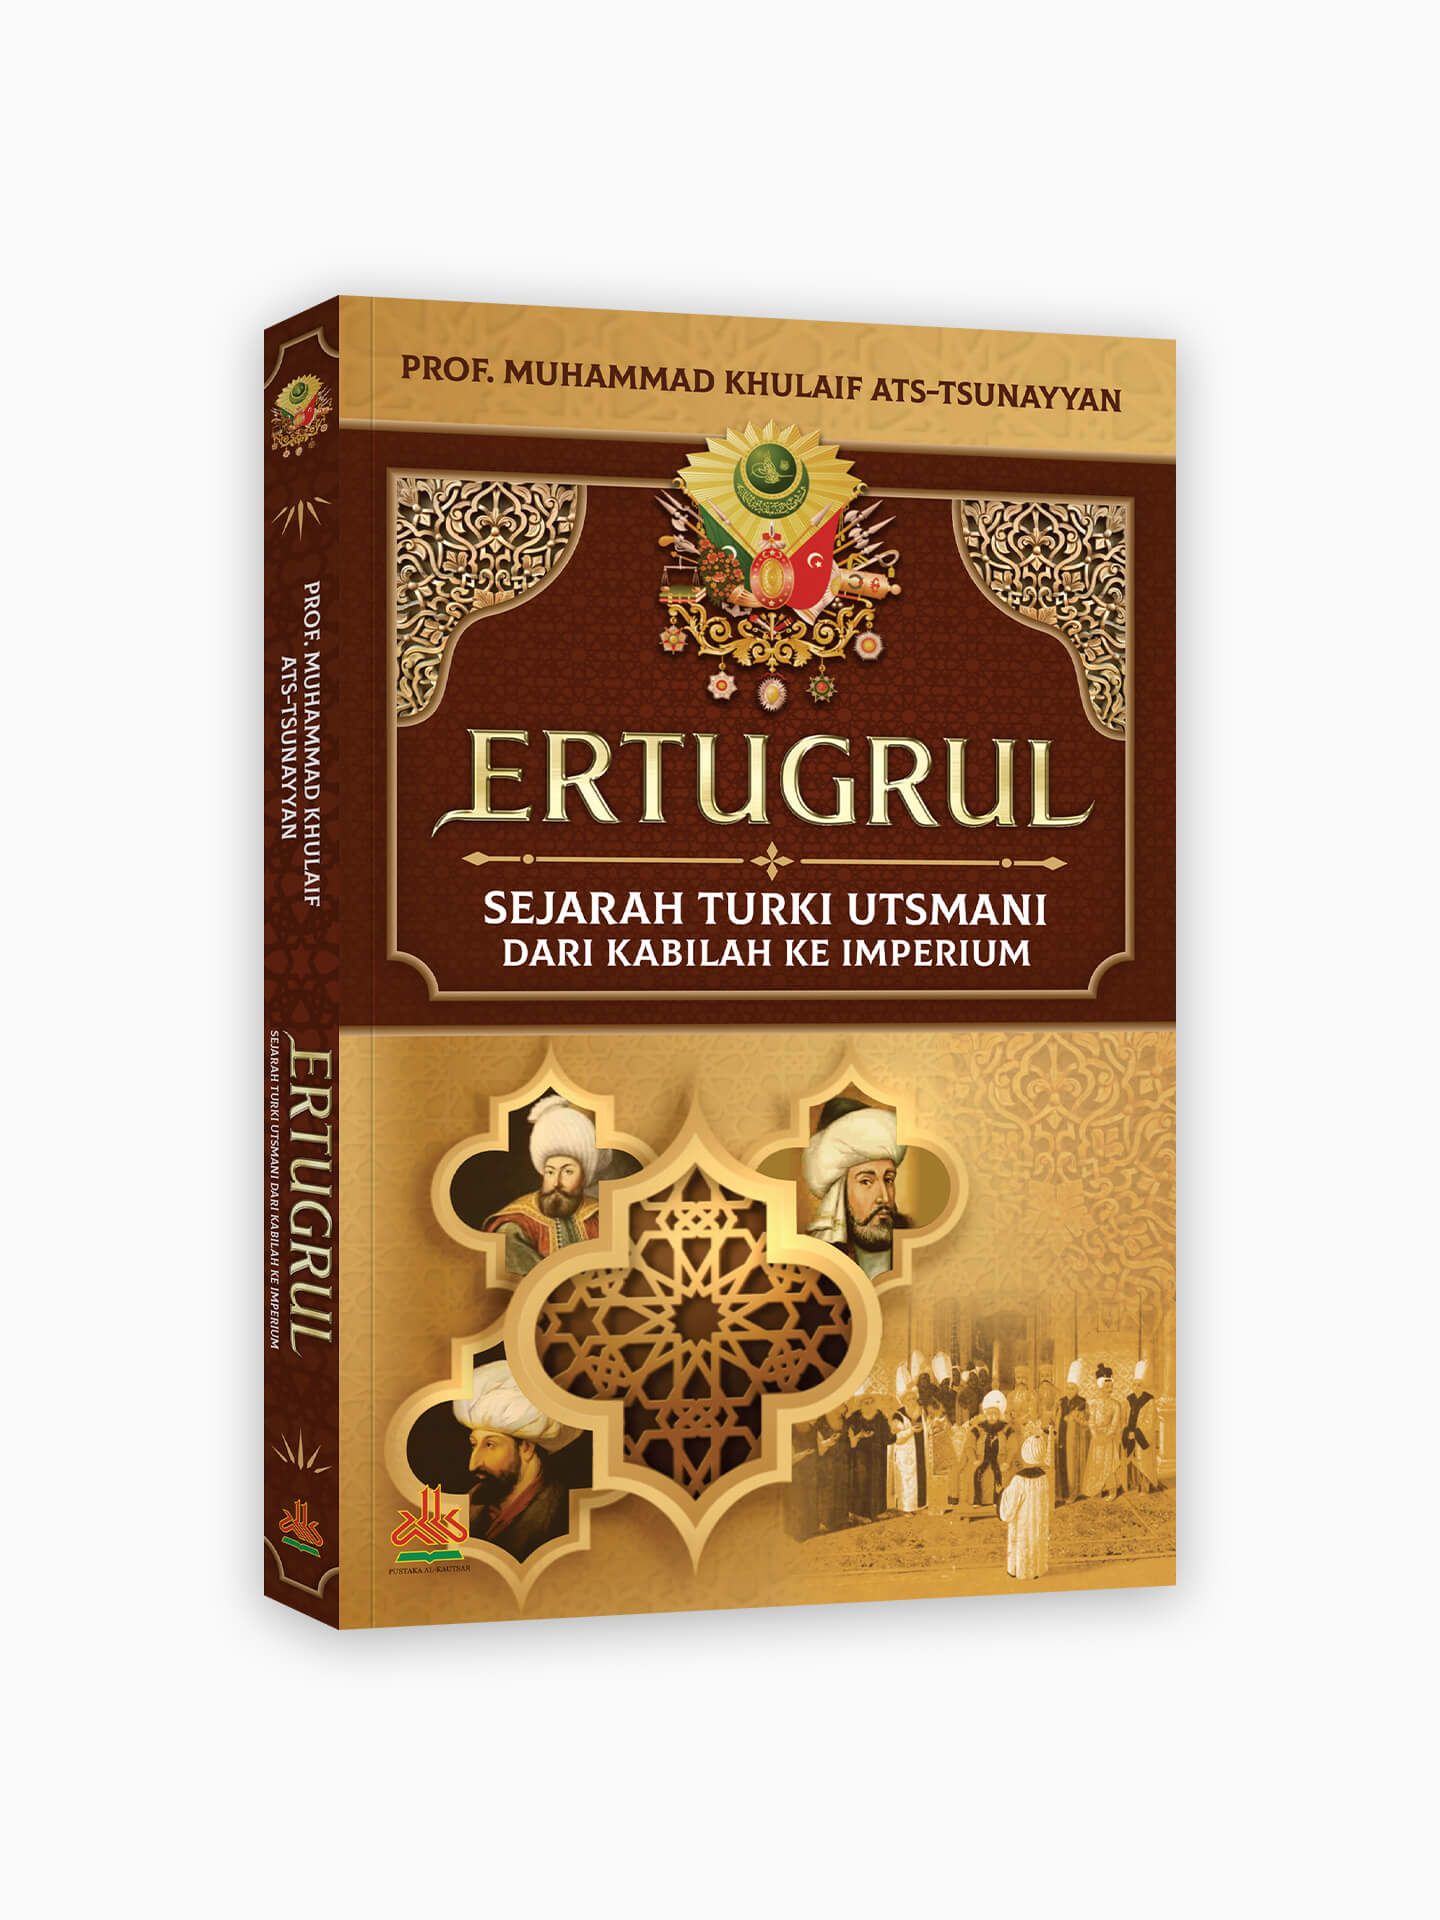 Ertugrul : Sejarah Turki Utsmani dari Kabilah Ke Imperium (Soft Cover)